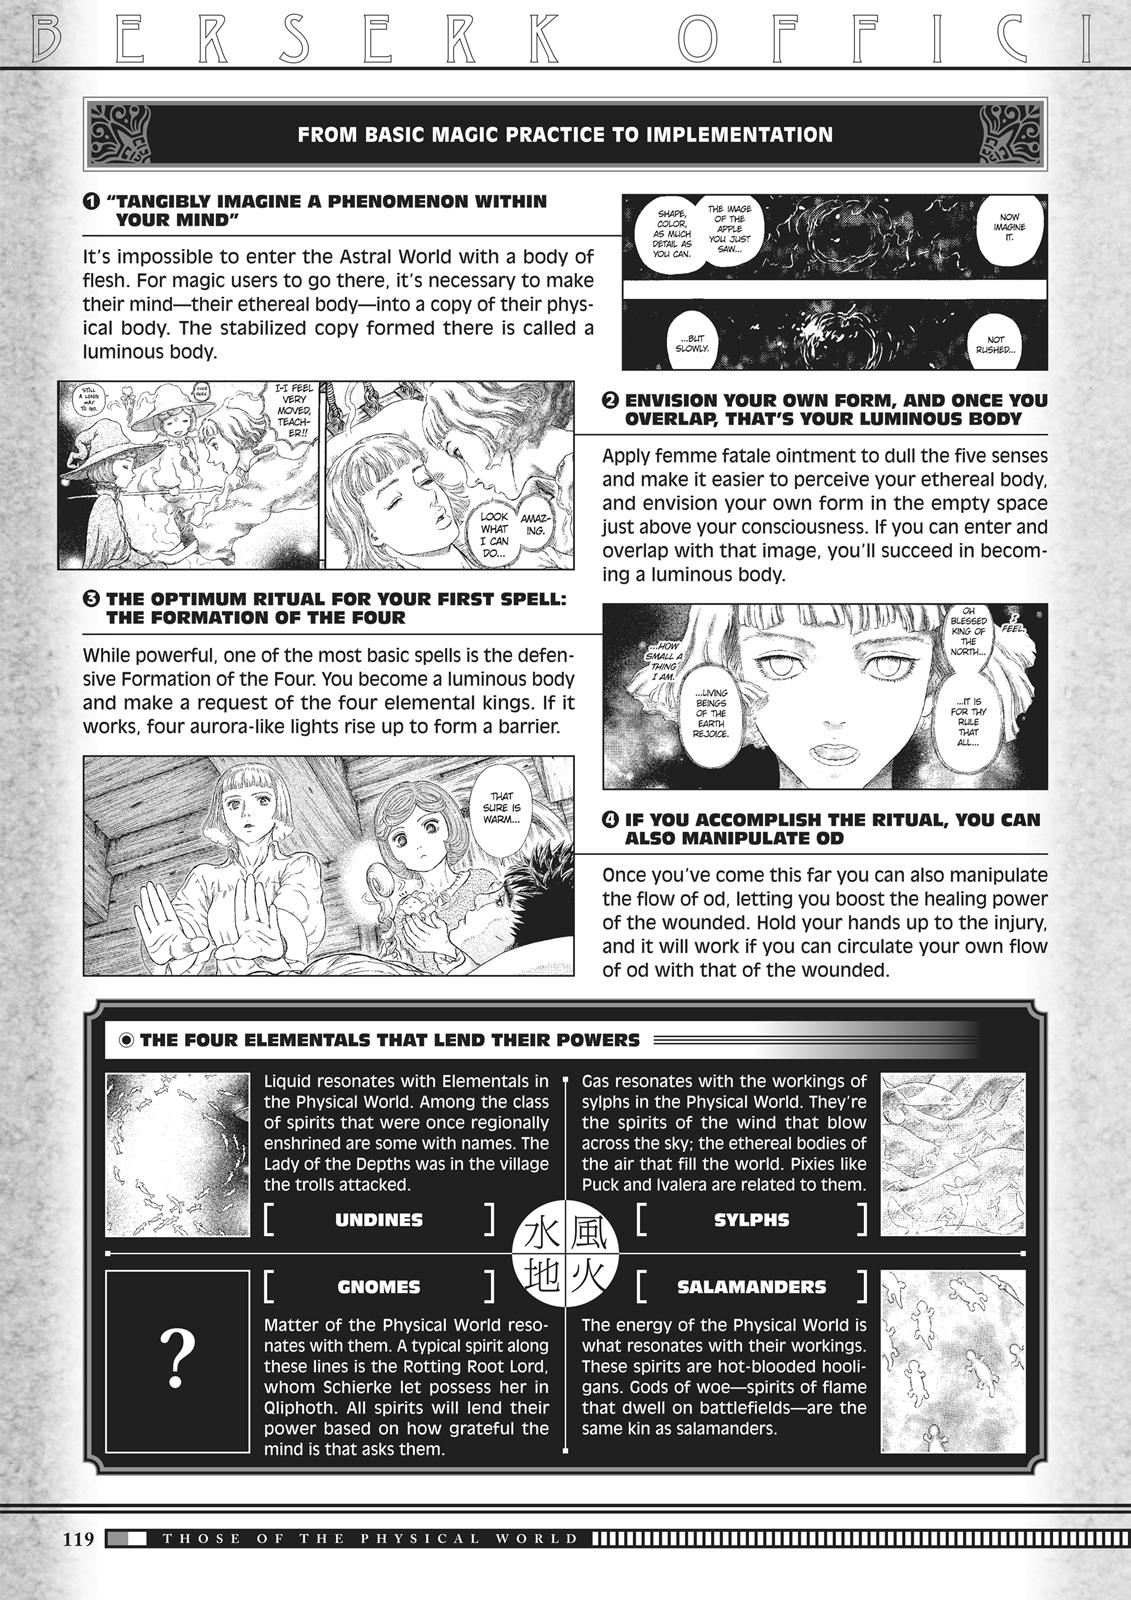 Berserk Manga Chapter 350.5 image 117